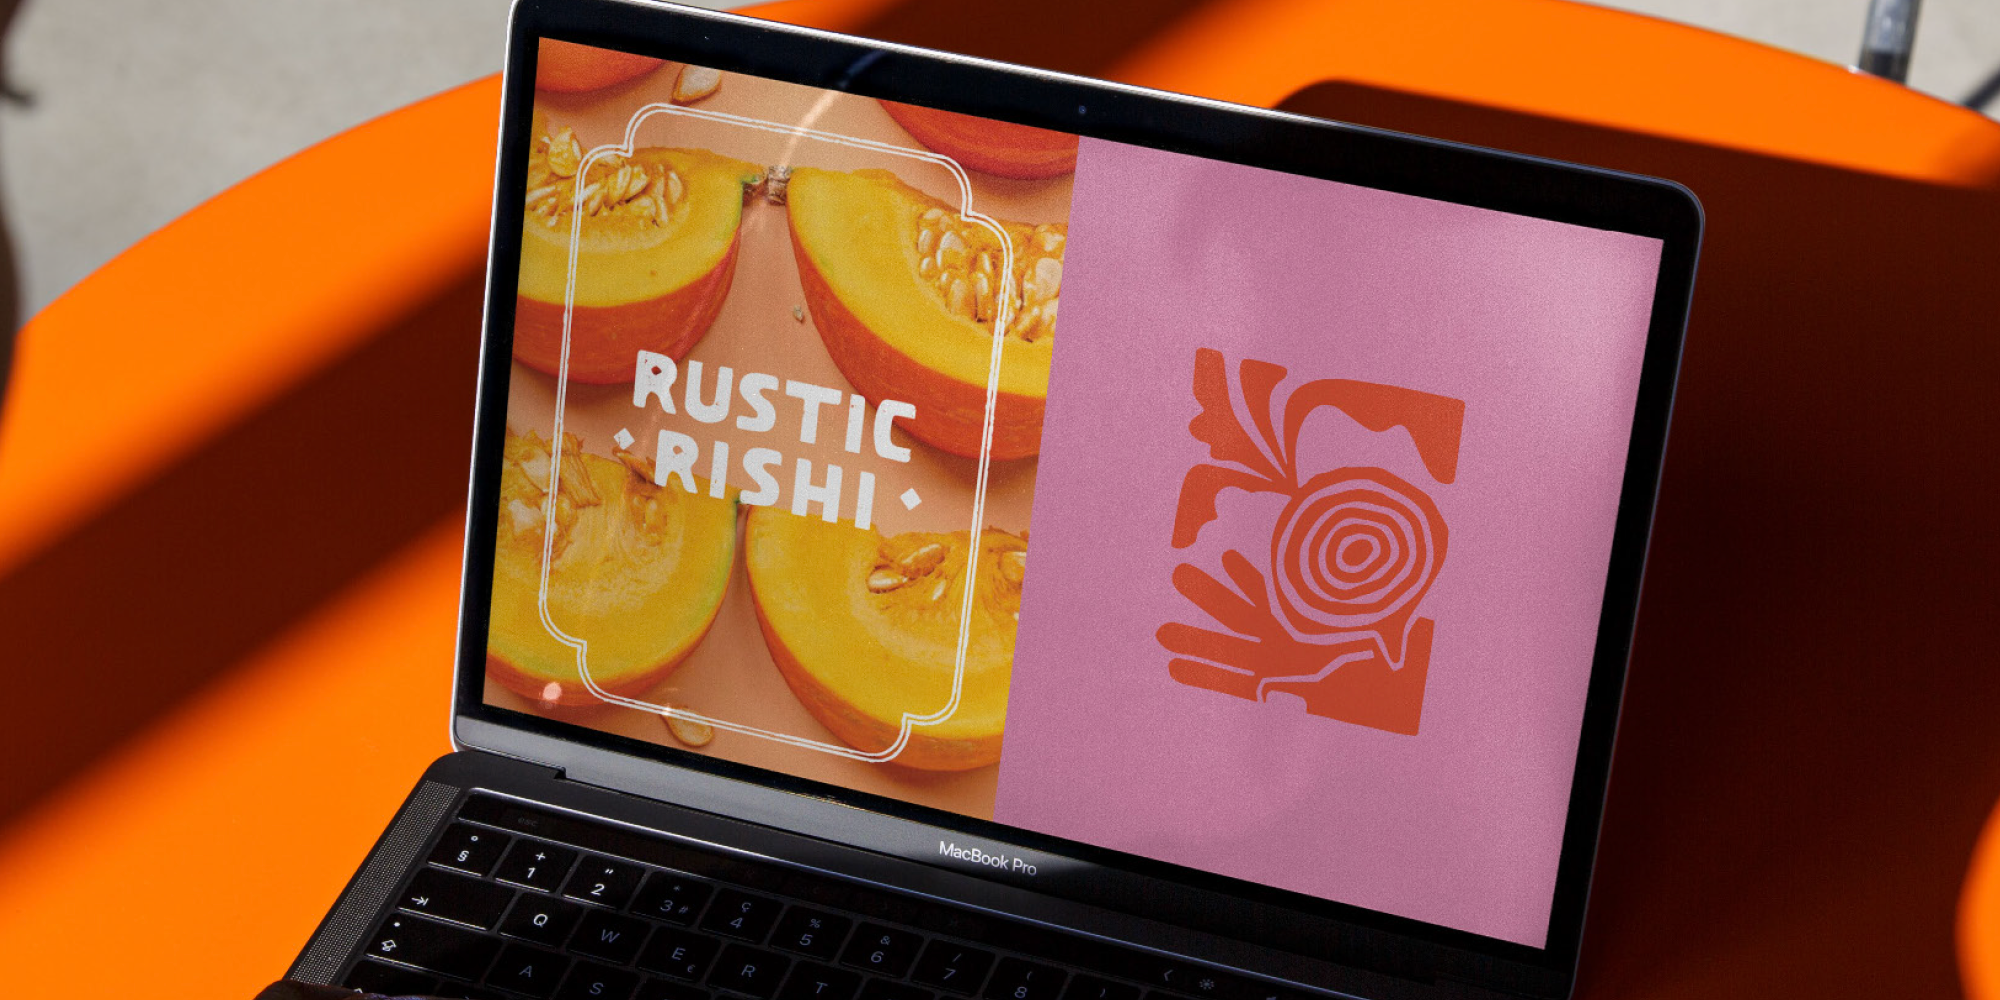 Rustic-Rishi-2